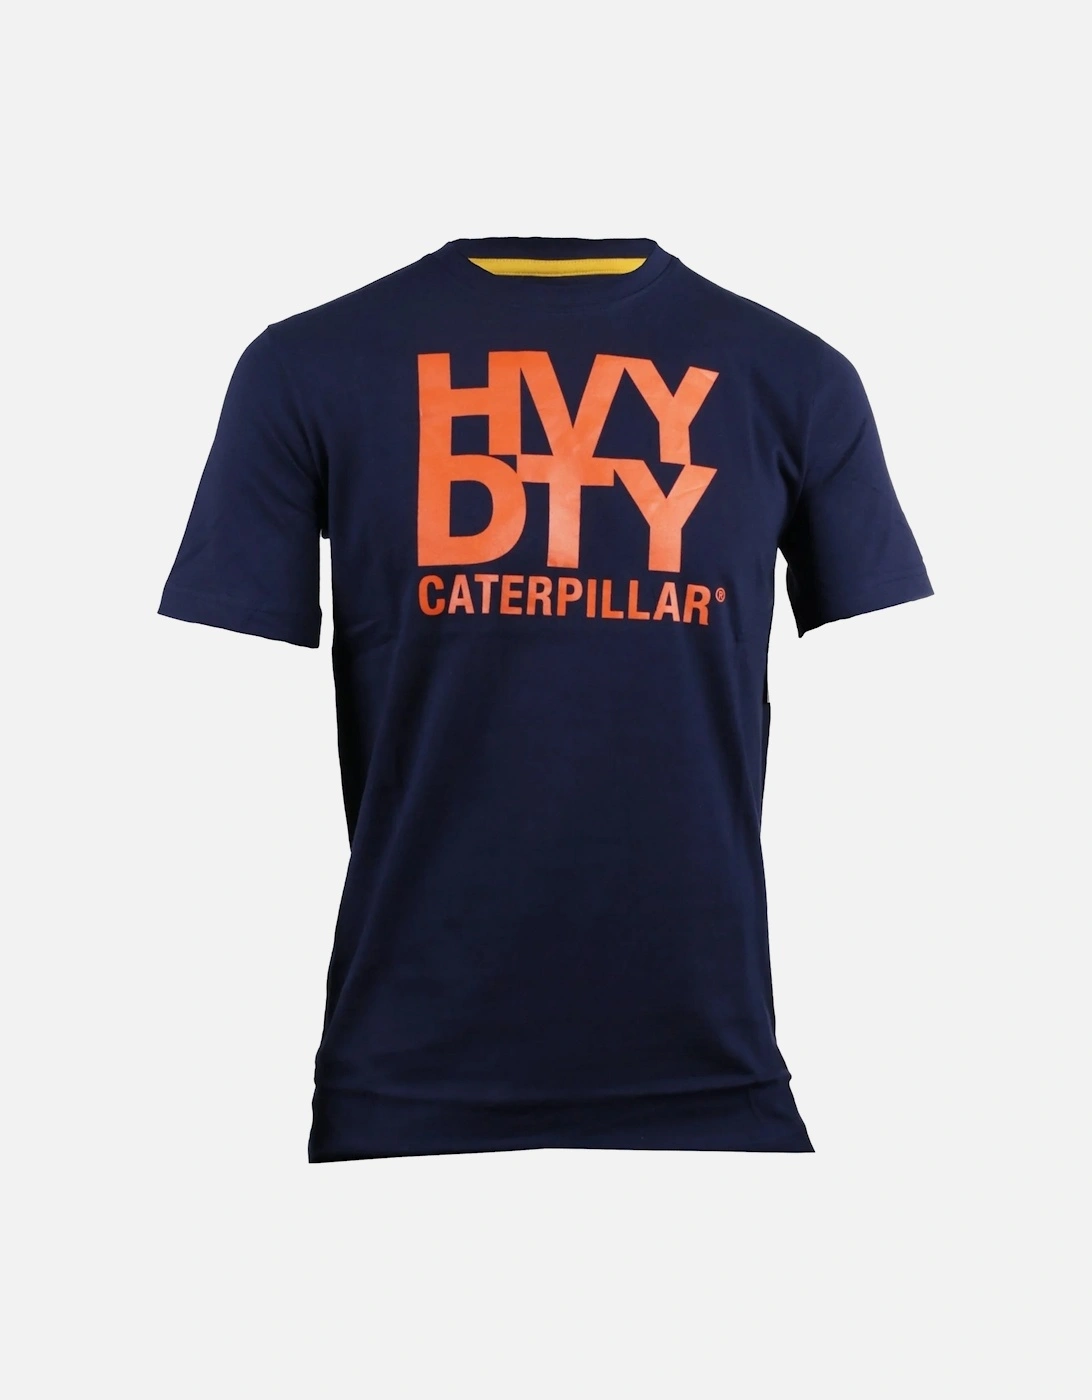 Mens Trademark Logo Heavy Duty T-Shirt, 6 of 5